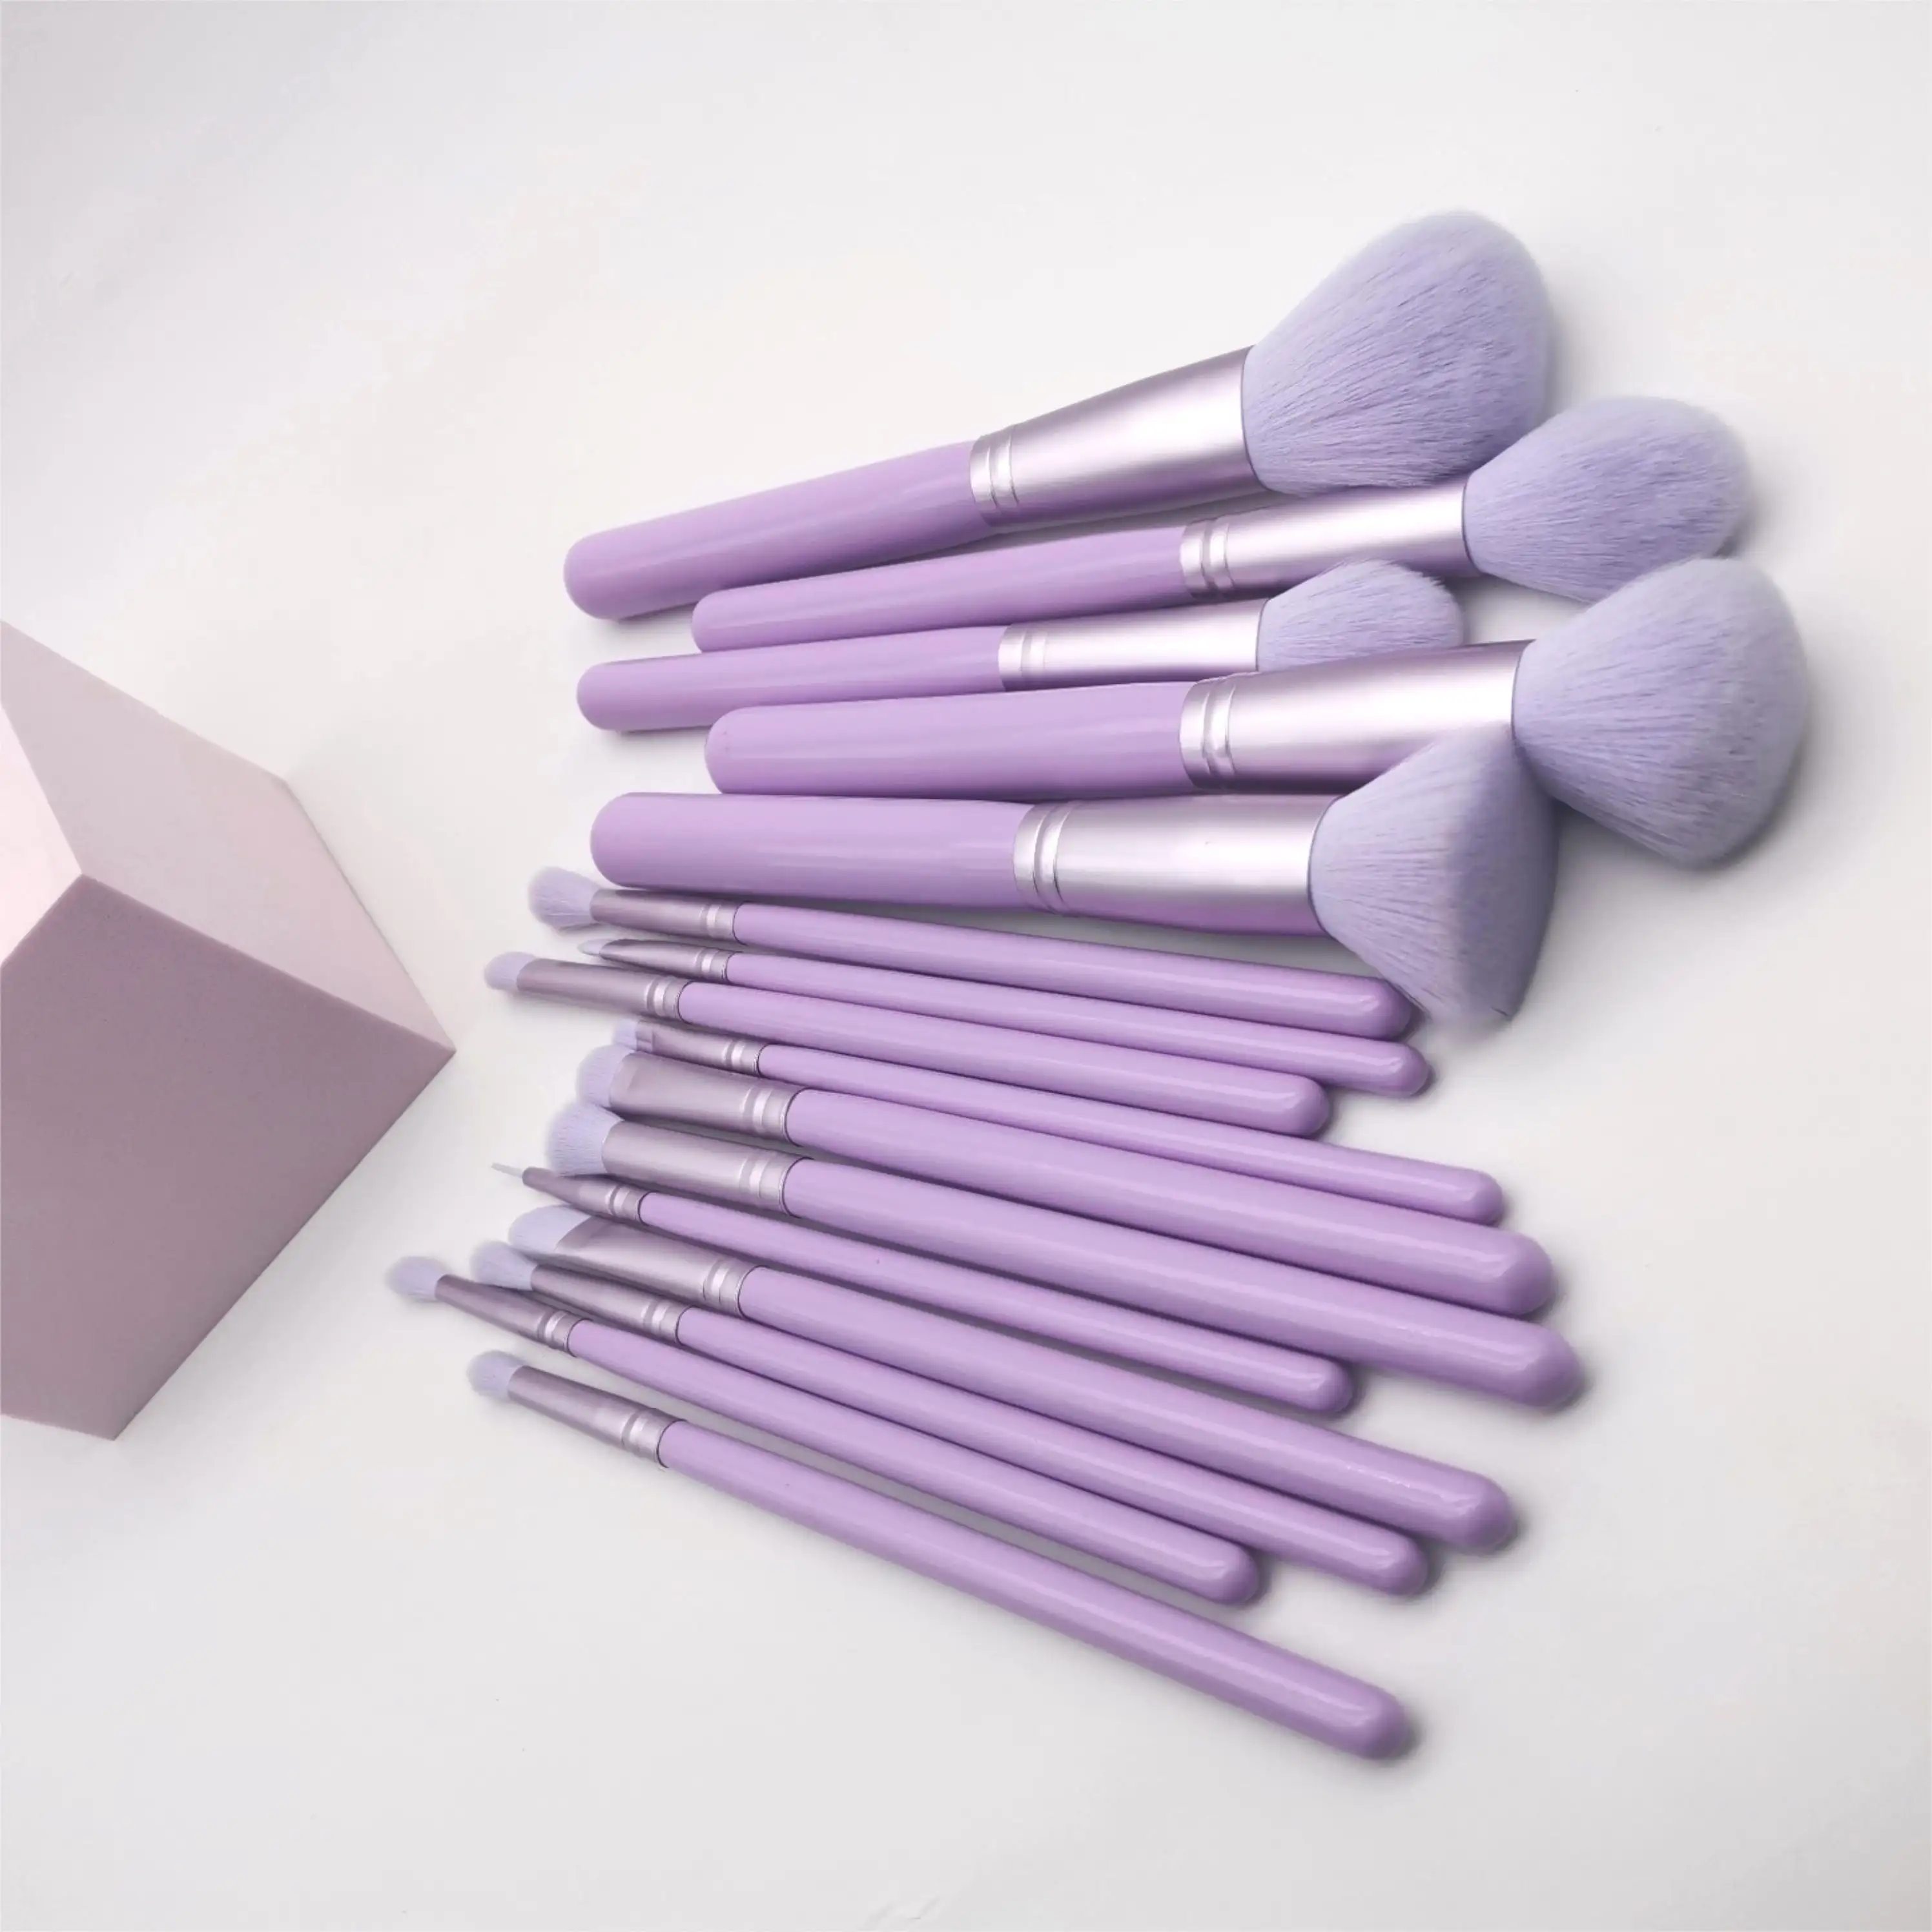 YRX X010 16 pezzi Set di pennelli per trucco di alta qualità Purple Bling Blusher Blending Eyeshadow Eyeliner Powder Kit di pennelli per trucco